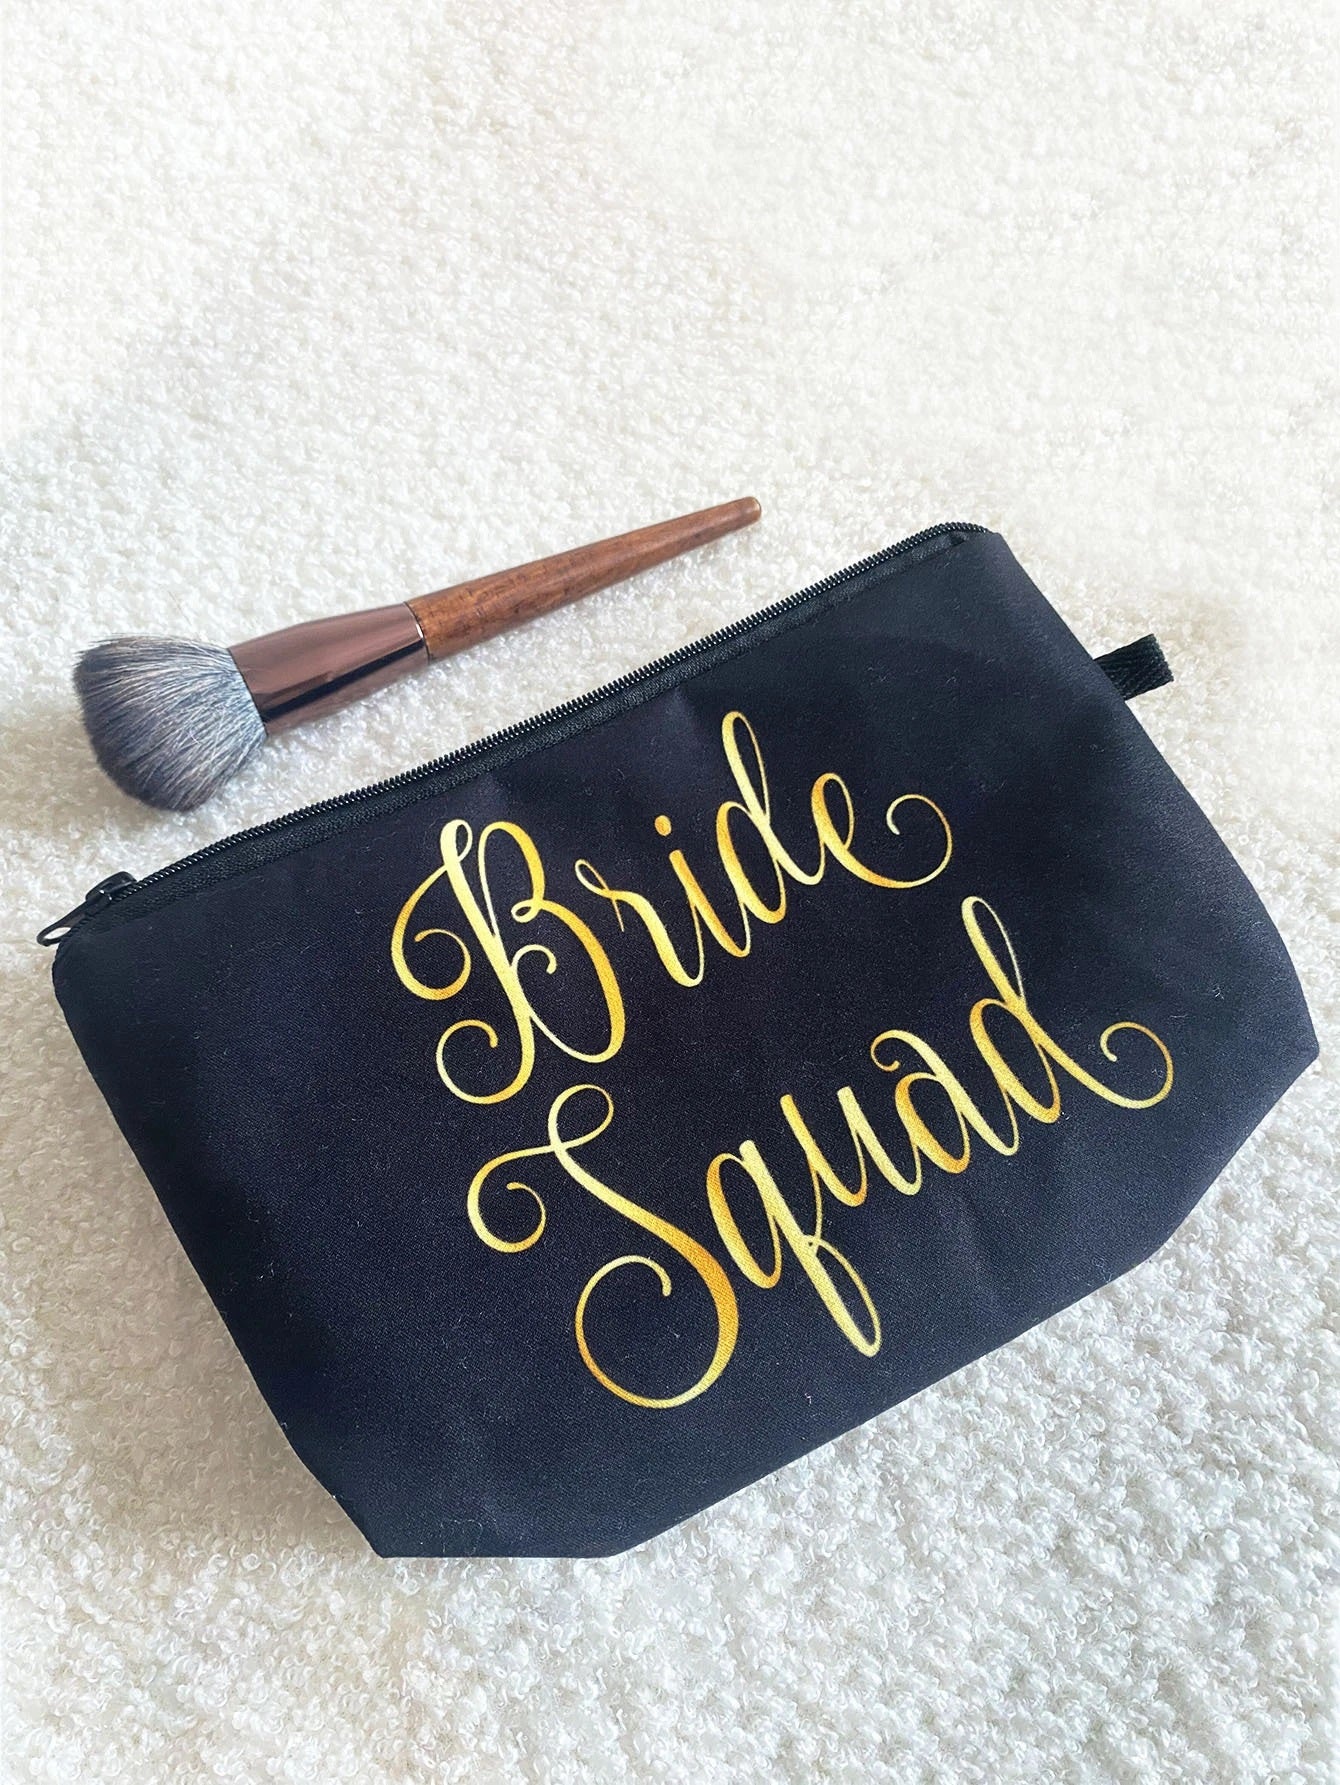 Bride Squad Cosmetic Bag